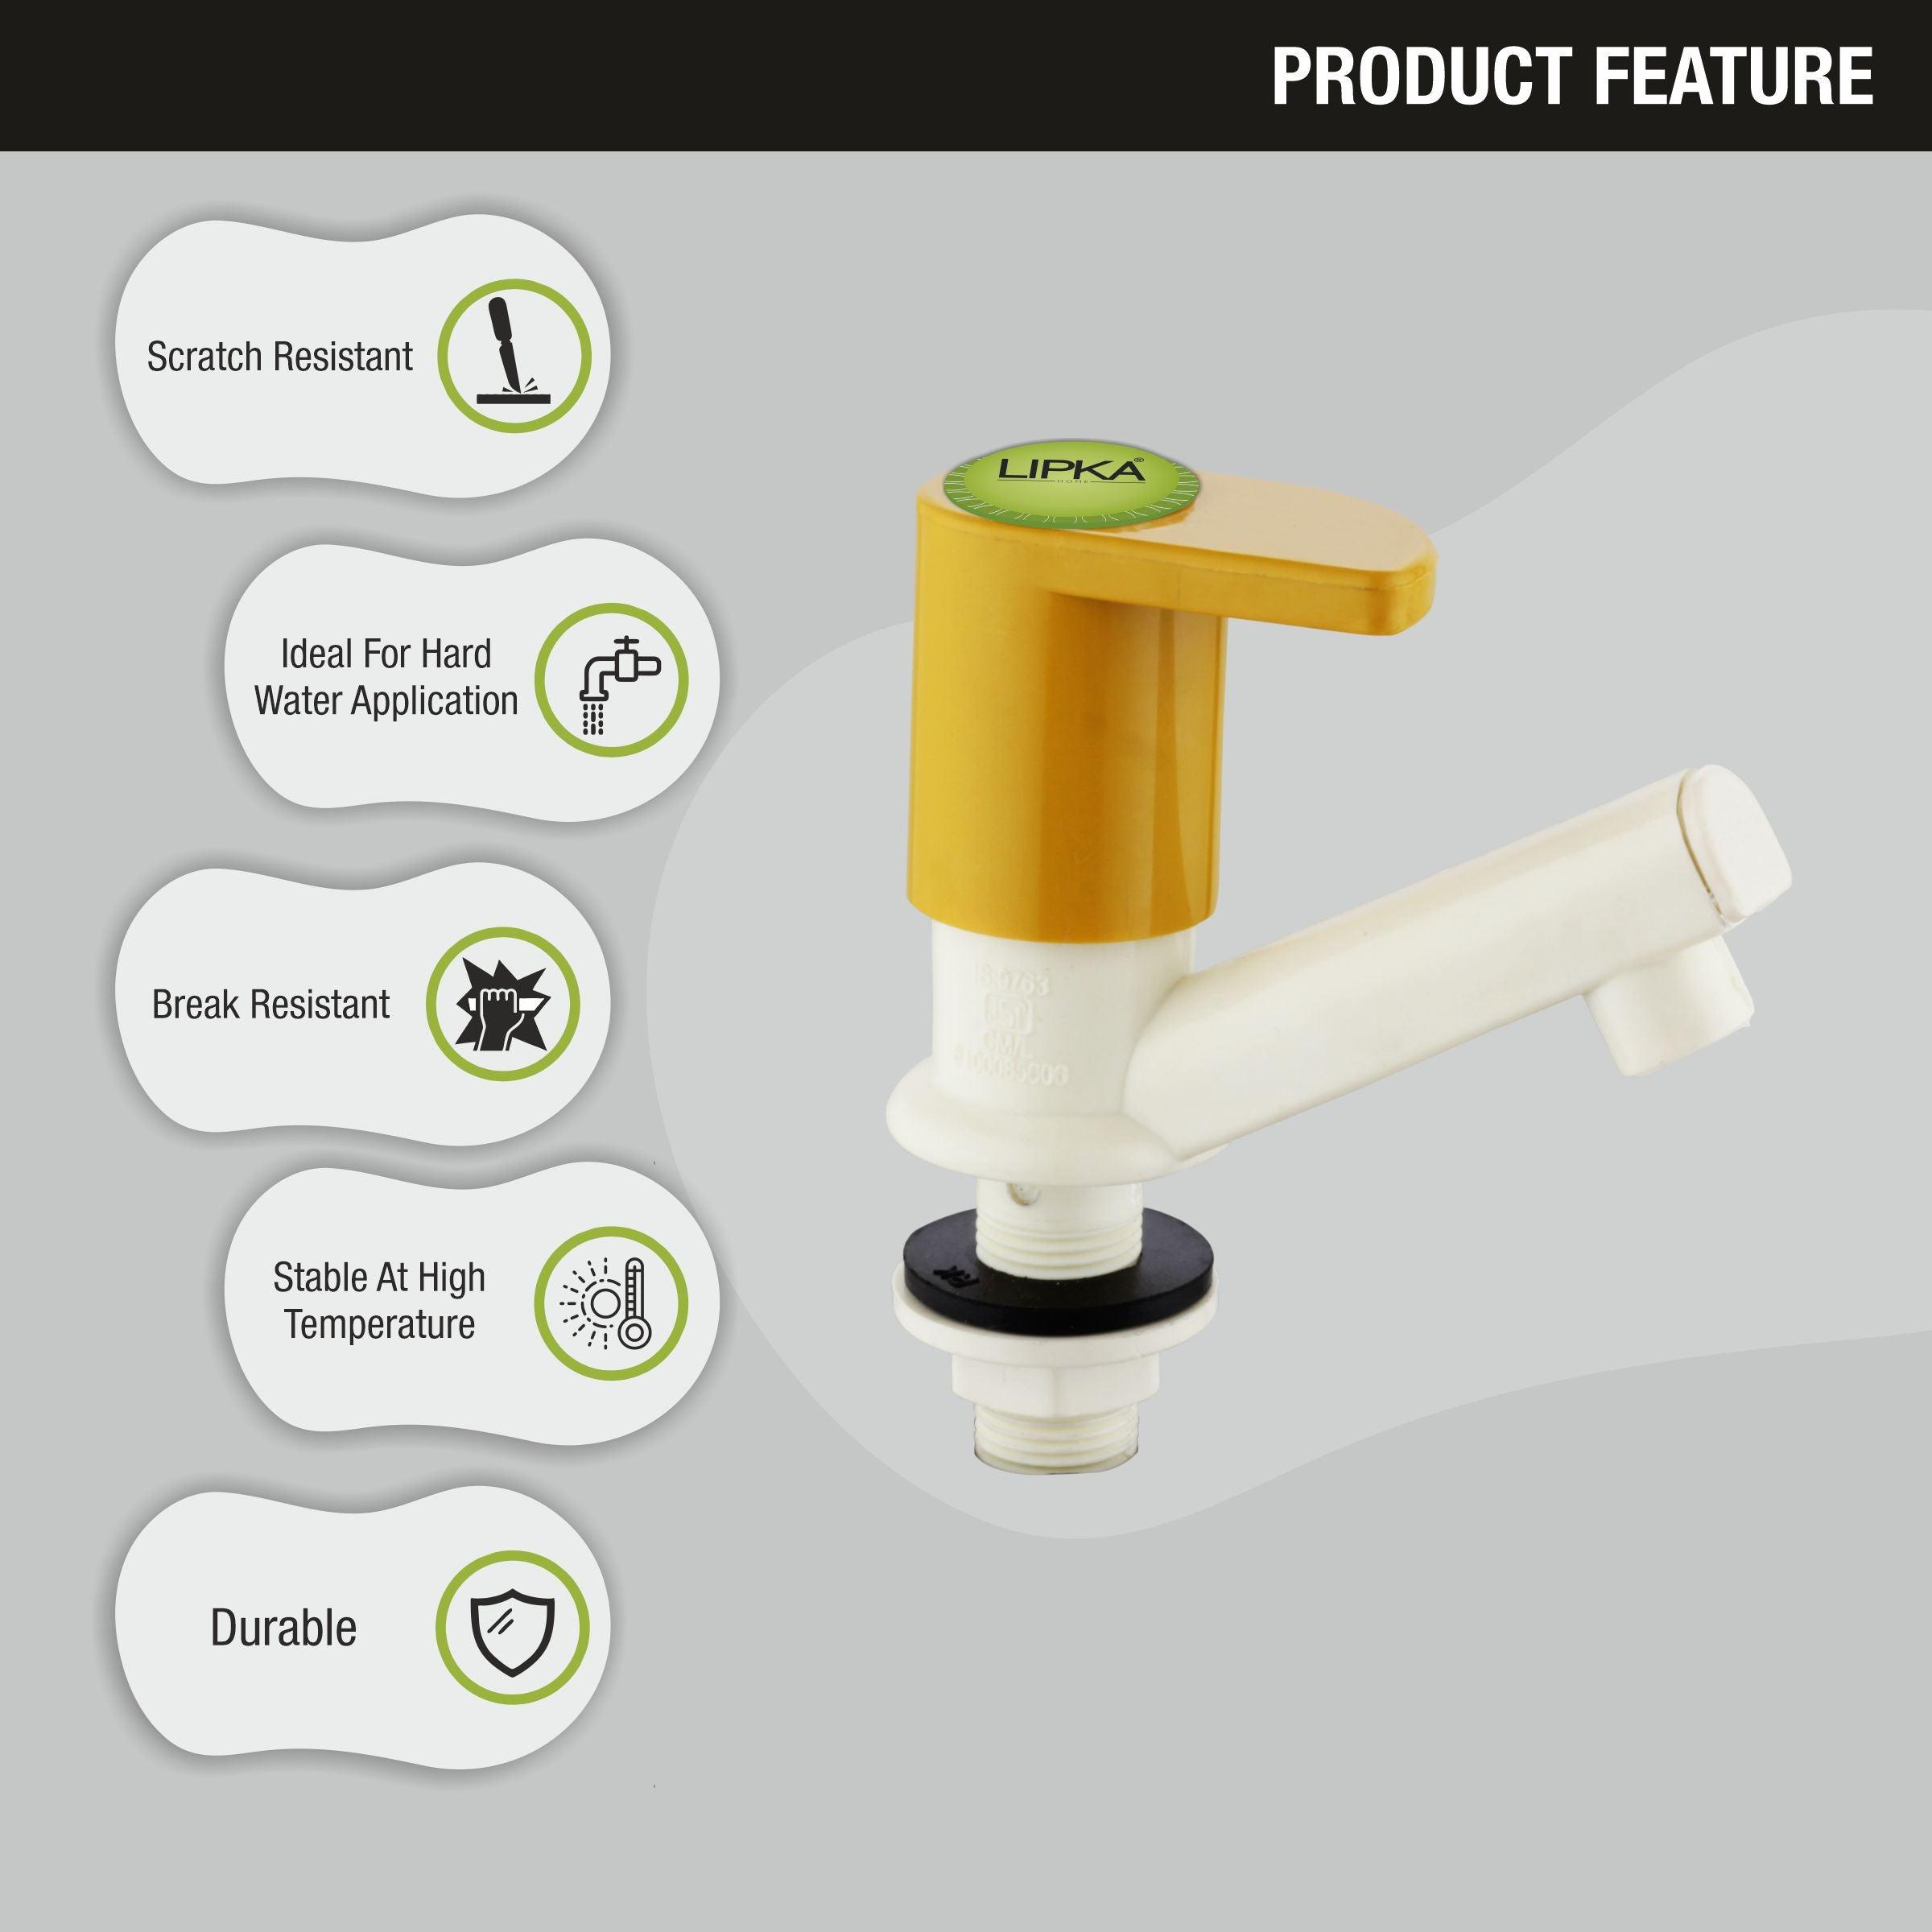 Pecker Pillar Tap PTMT Faucet features